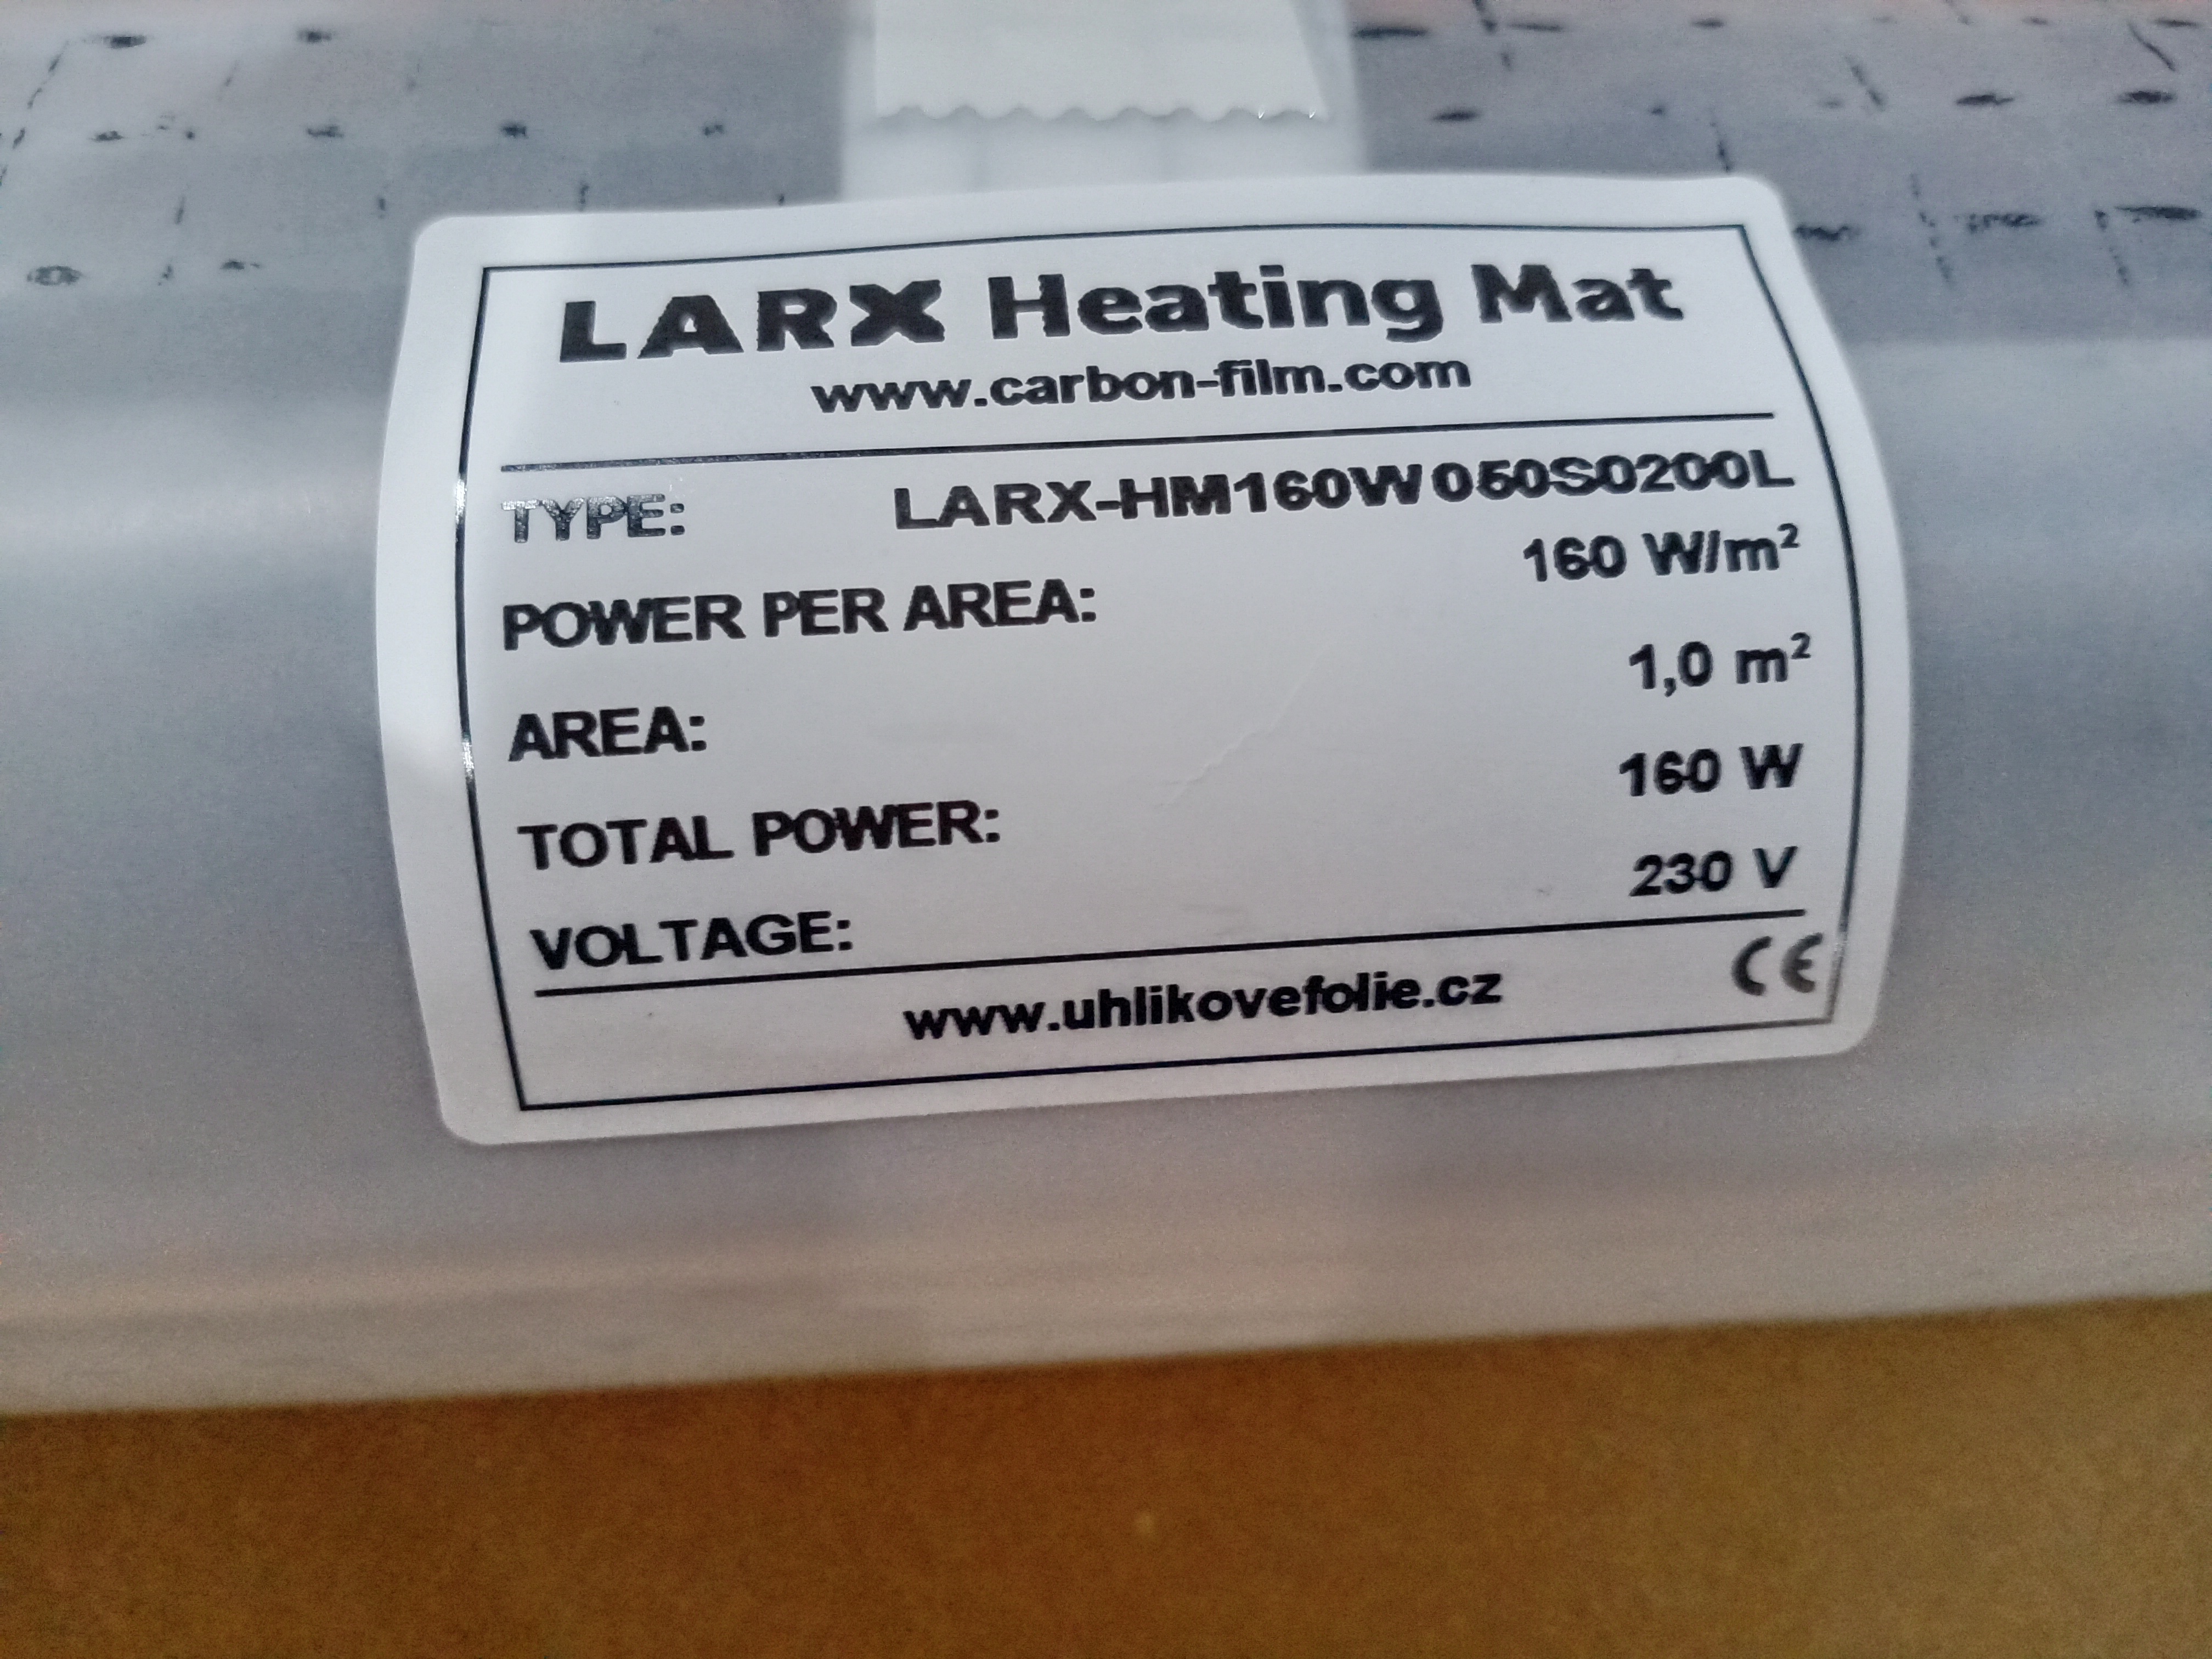 LARX heating mat vyroba 2